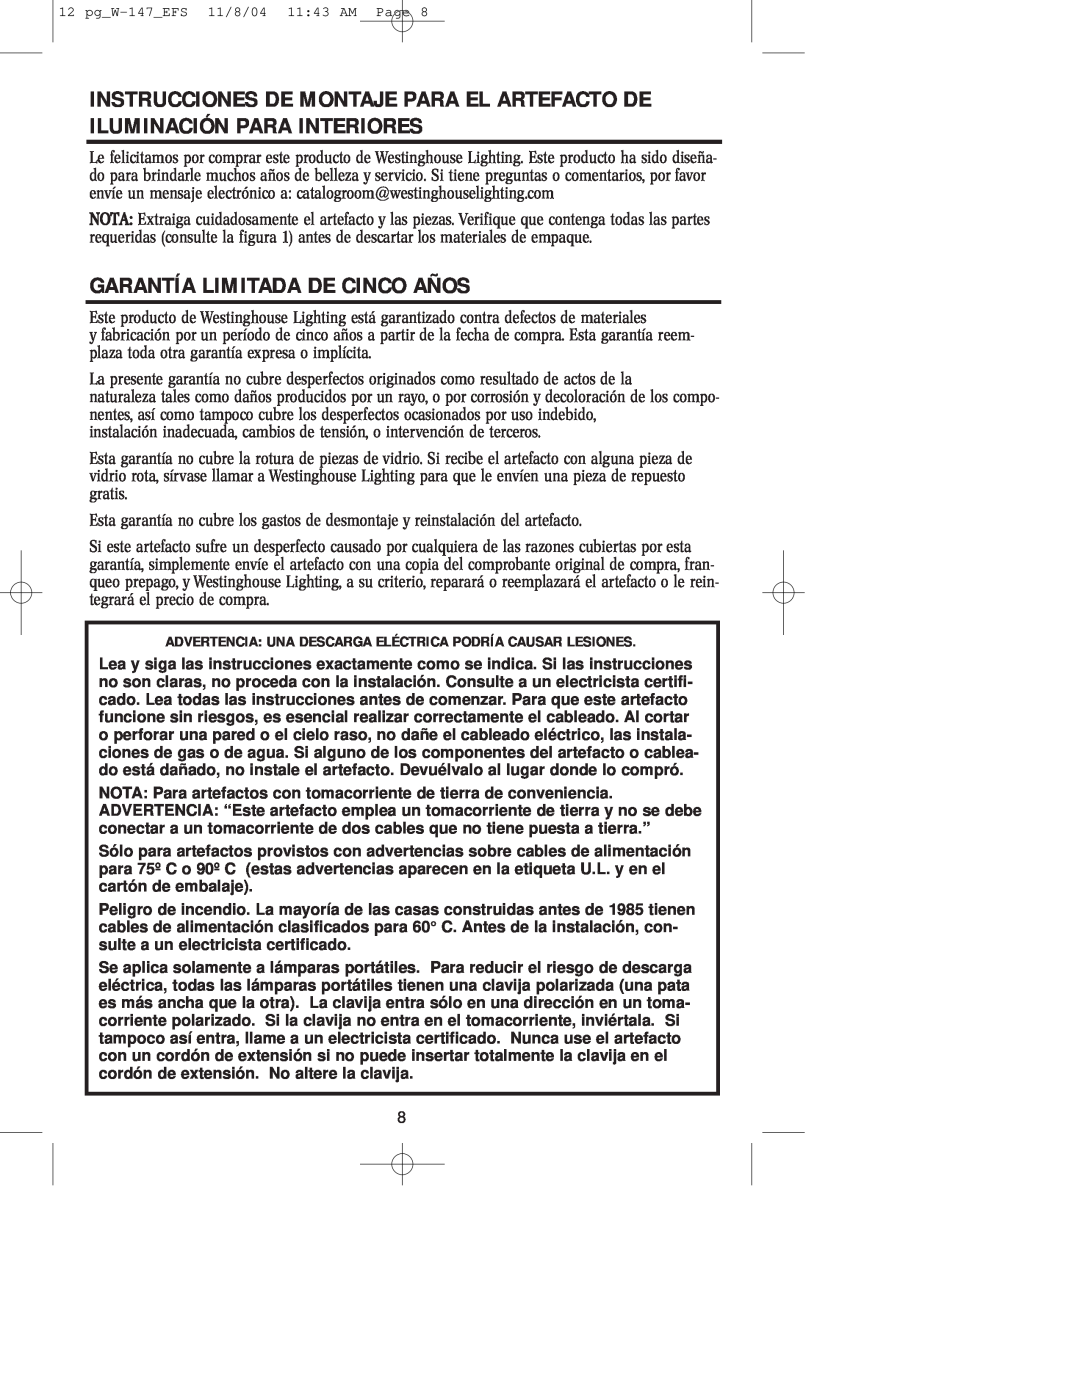 Westinghouse W-147 owner manual Garantía Limitada De Cinco Años 